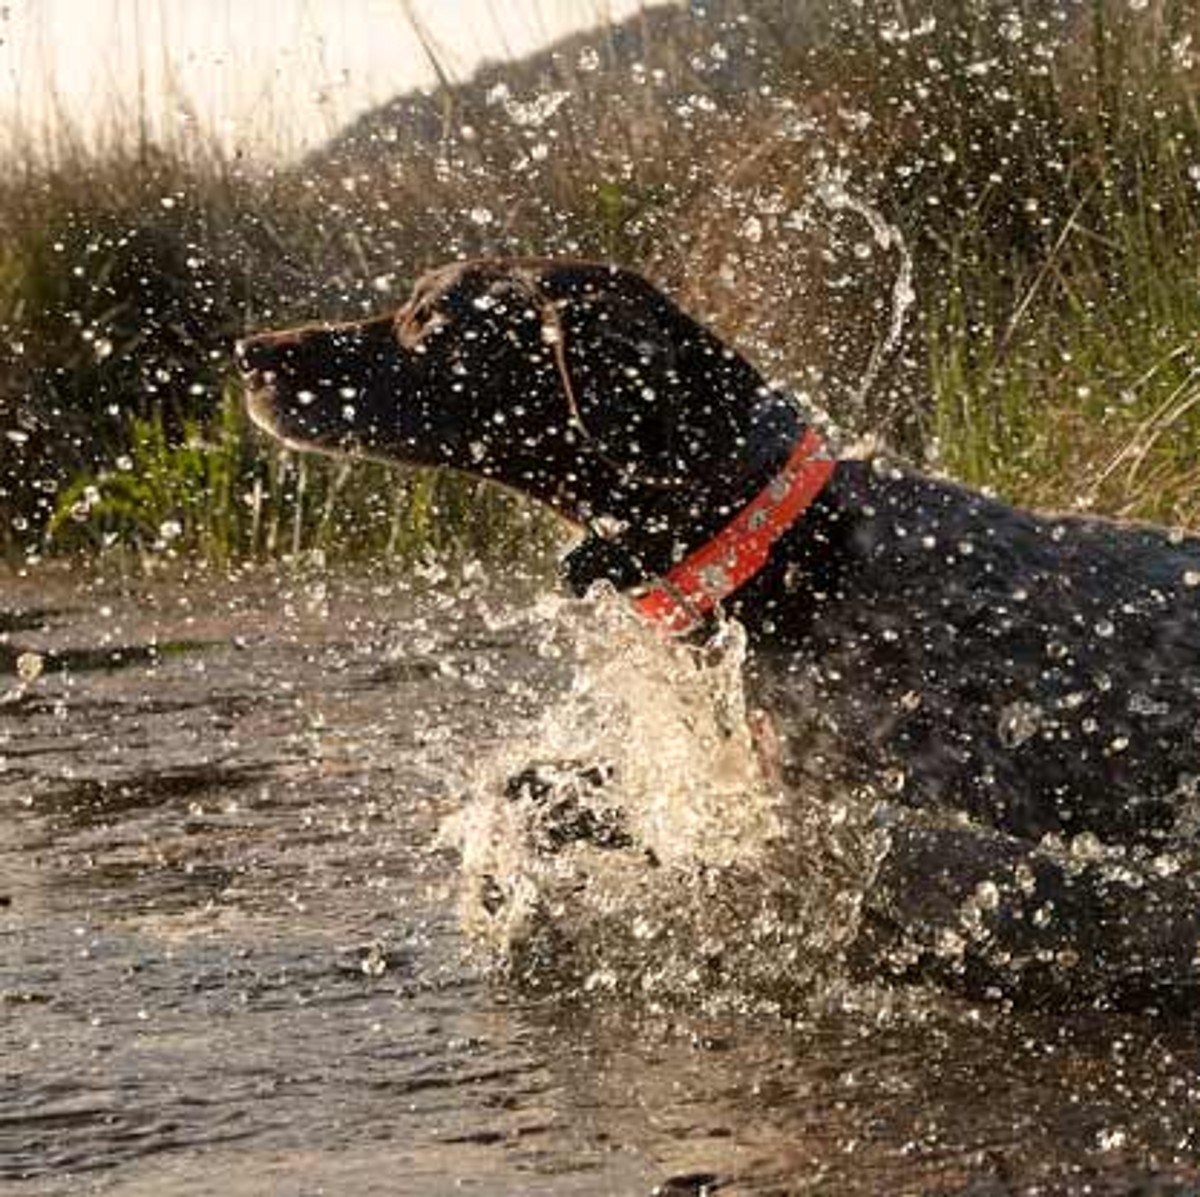 Dog splashing in water.